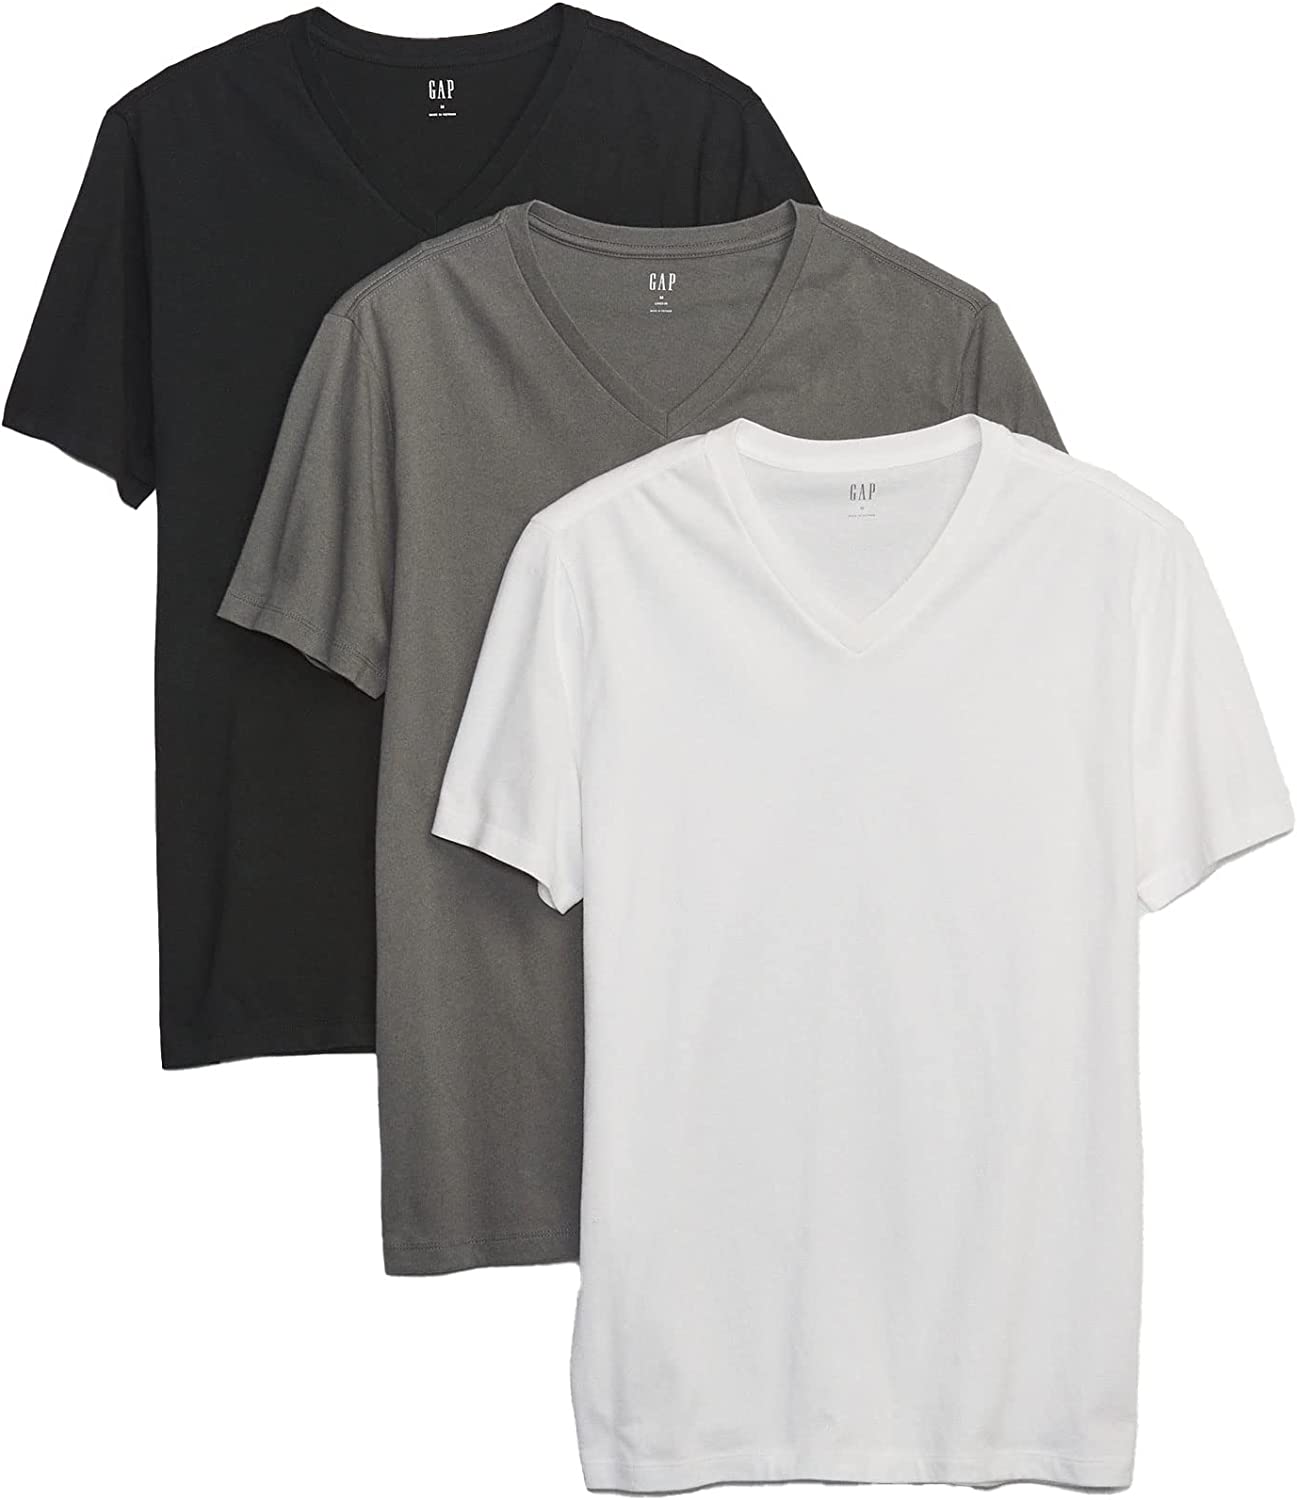 photo of GAP Men's 3-Pack Short Sleeve V-Neck Tee T-Shirt